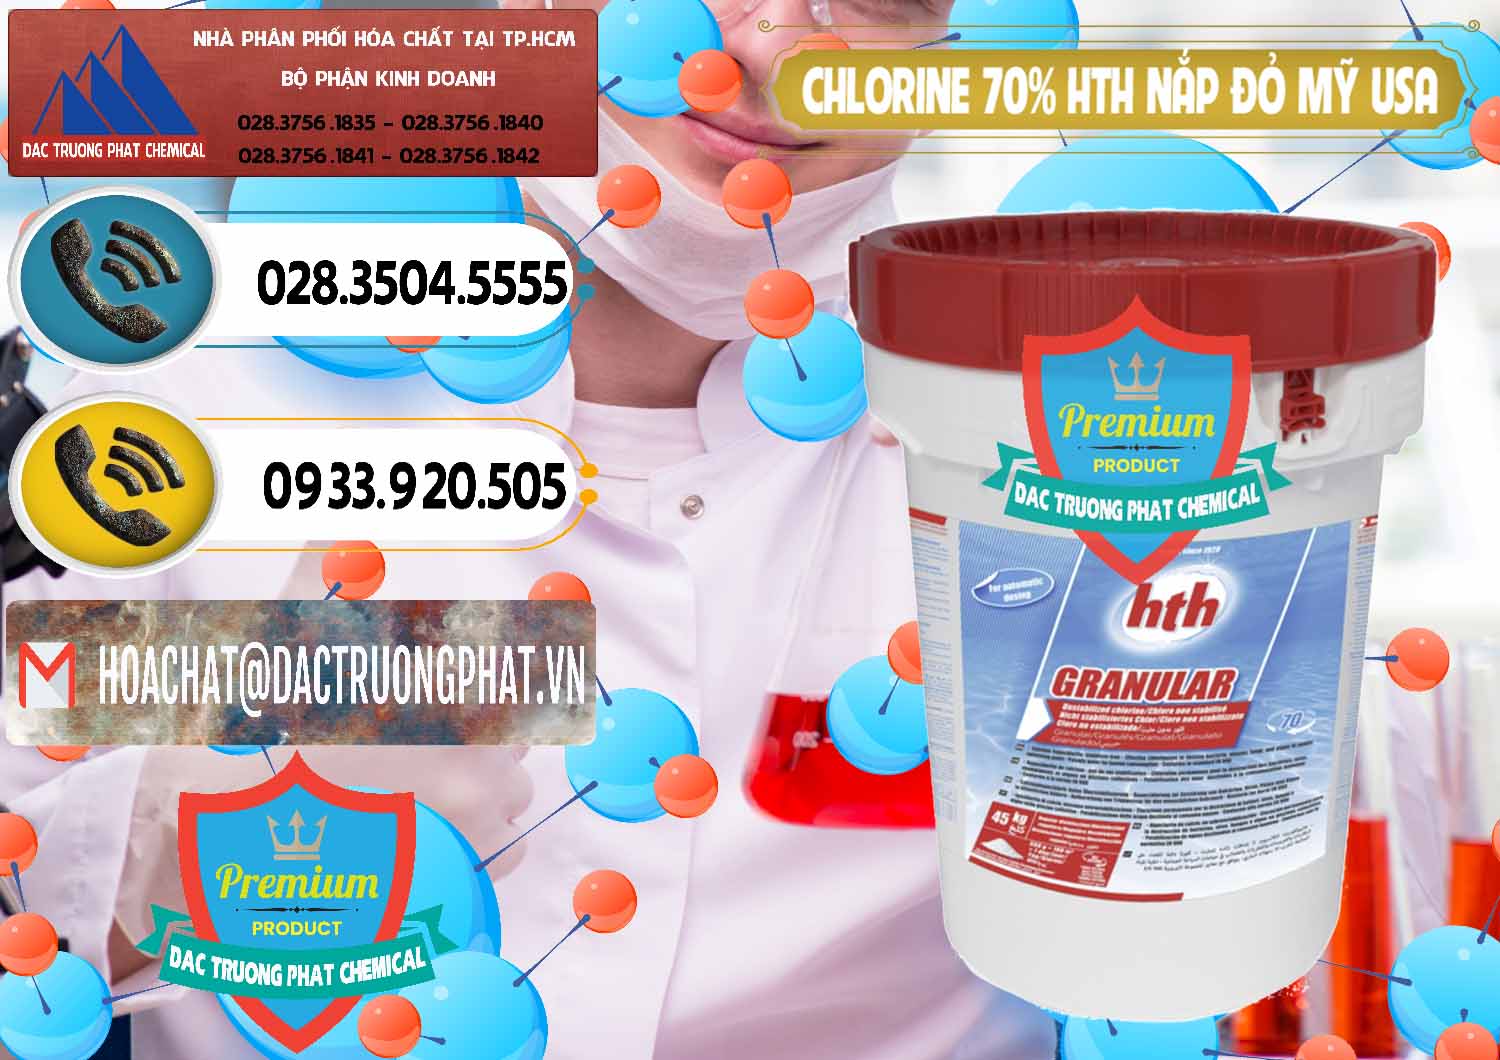 Công ty nhập khẩu và bán Clorin – Chlorine 70% HTH Nắp Đỏ Mỹ Usa - 0244 - Nơi phân phối _ cung ứng hóa chất tại TP.HCM - hoachatdetnhuom.vn